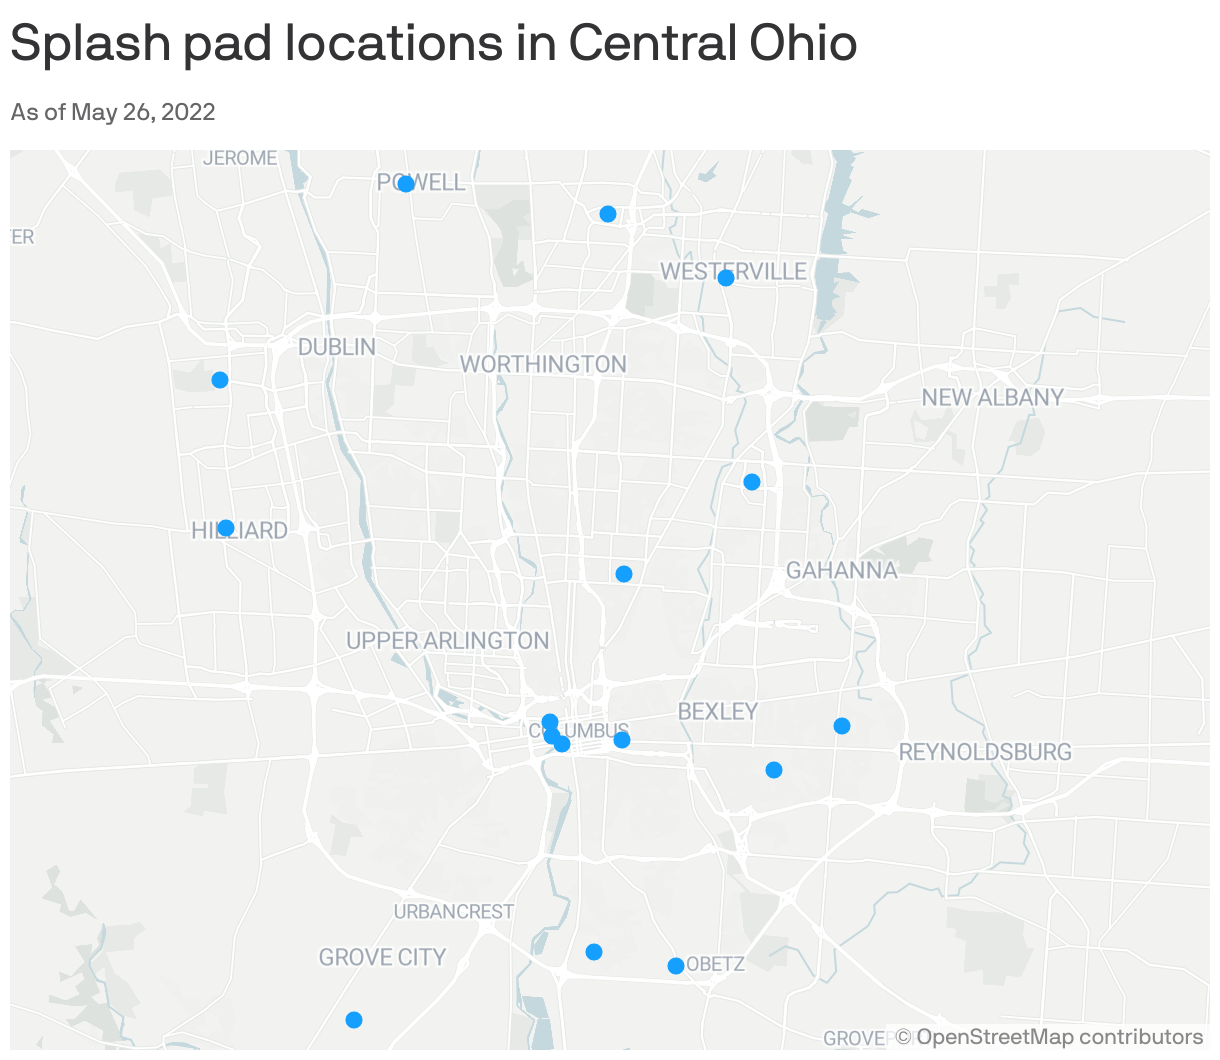 Splash pad locations in Central Ohio